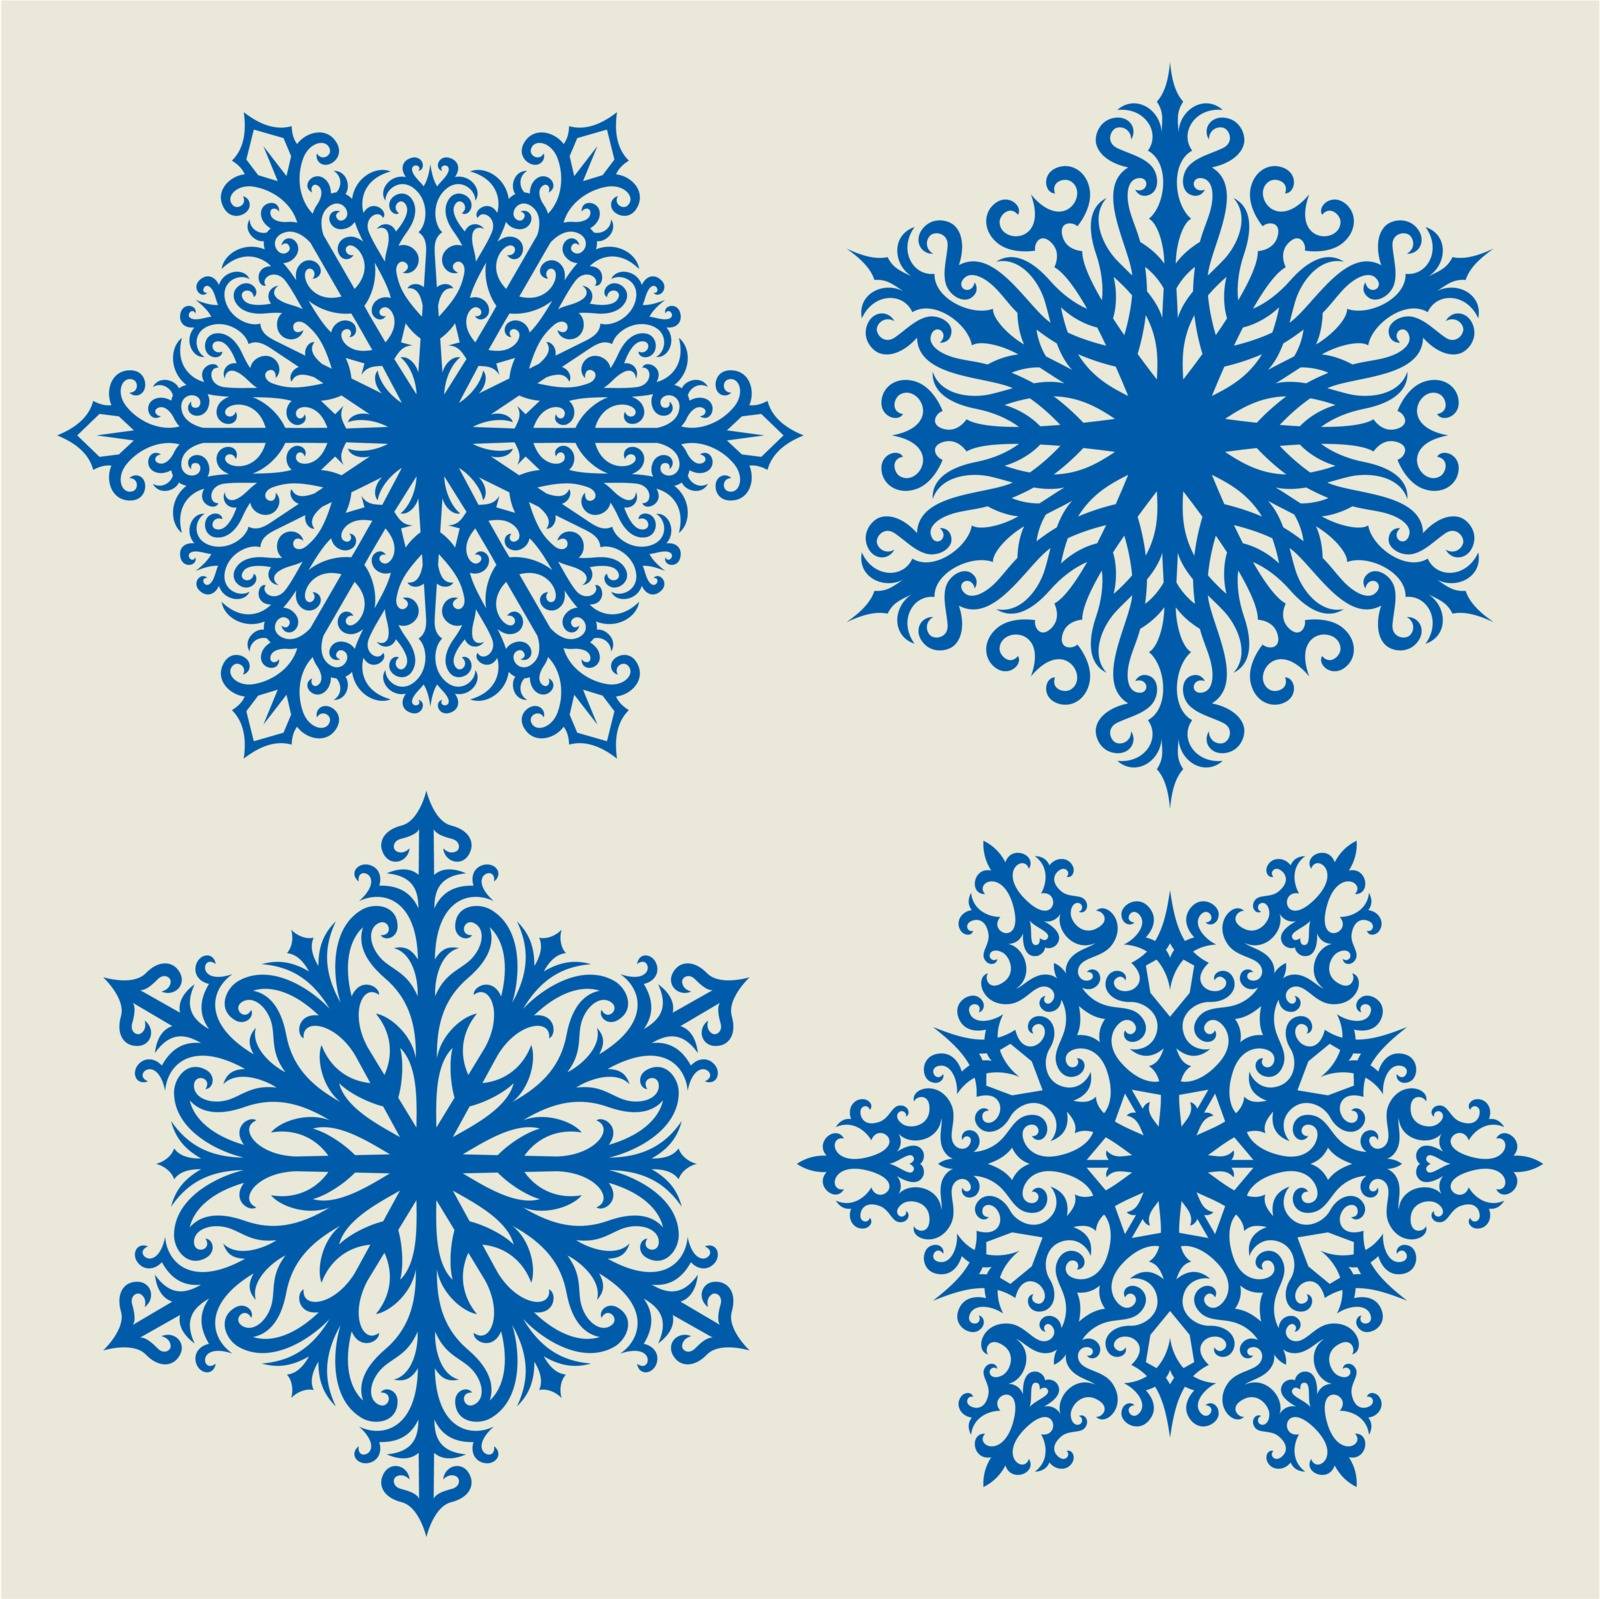 snowflakes by SanyaL